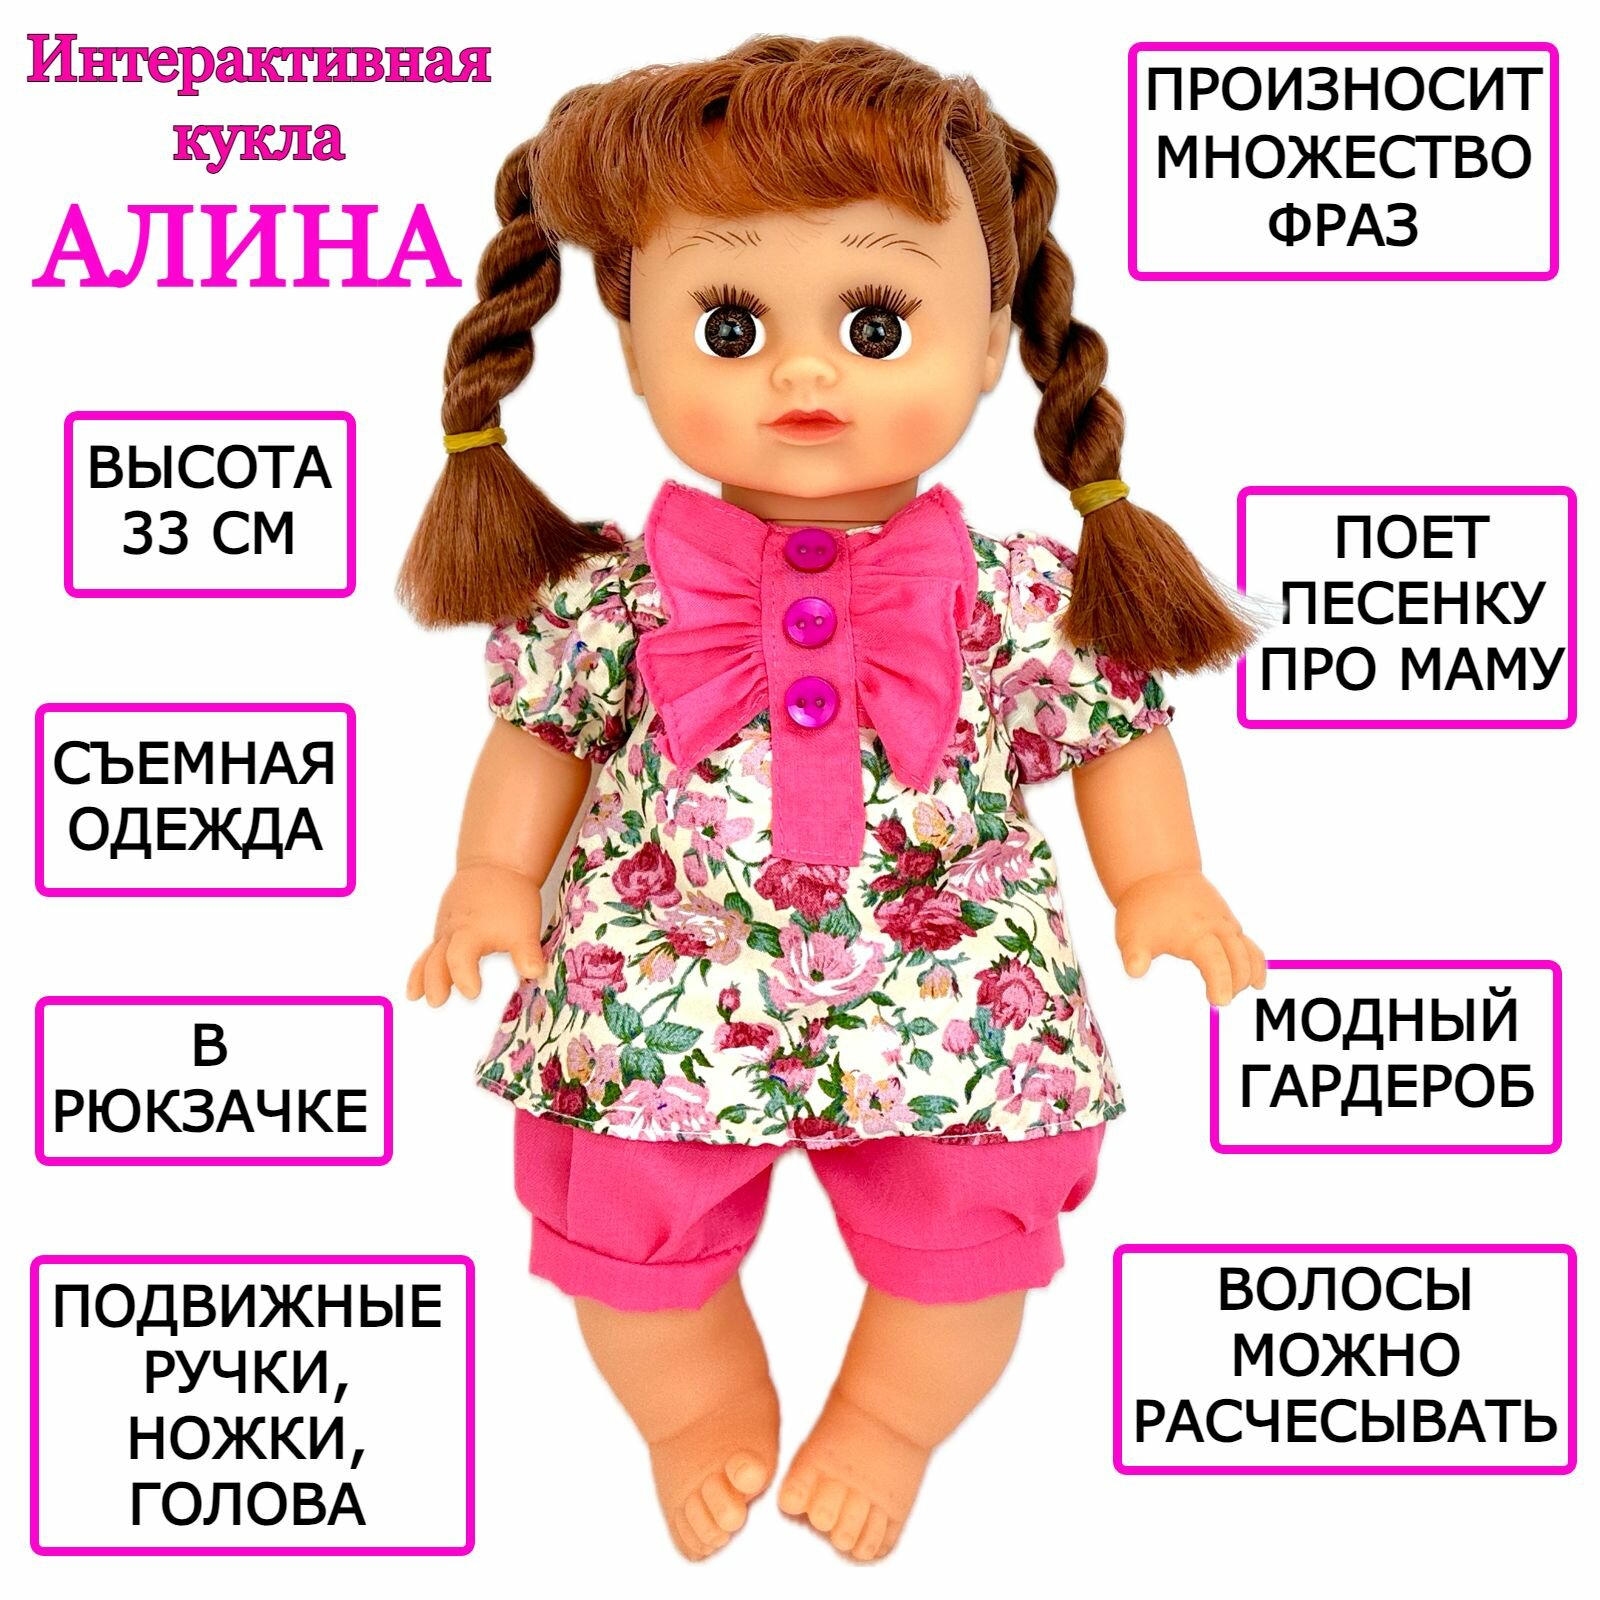 Интерактивная кукла Алина, говорящая, поет песню про маму, в сумочке-рюкзачке, 33 см